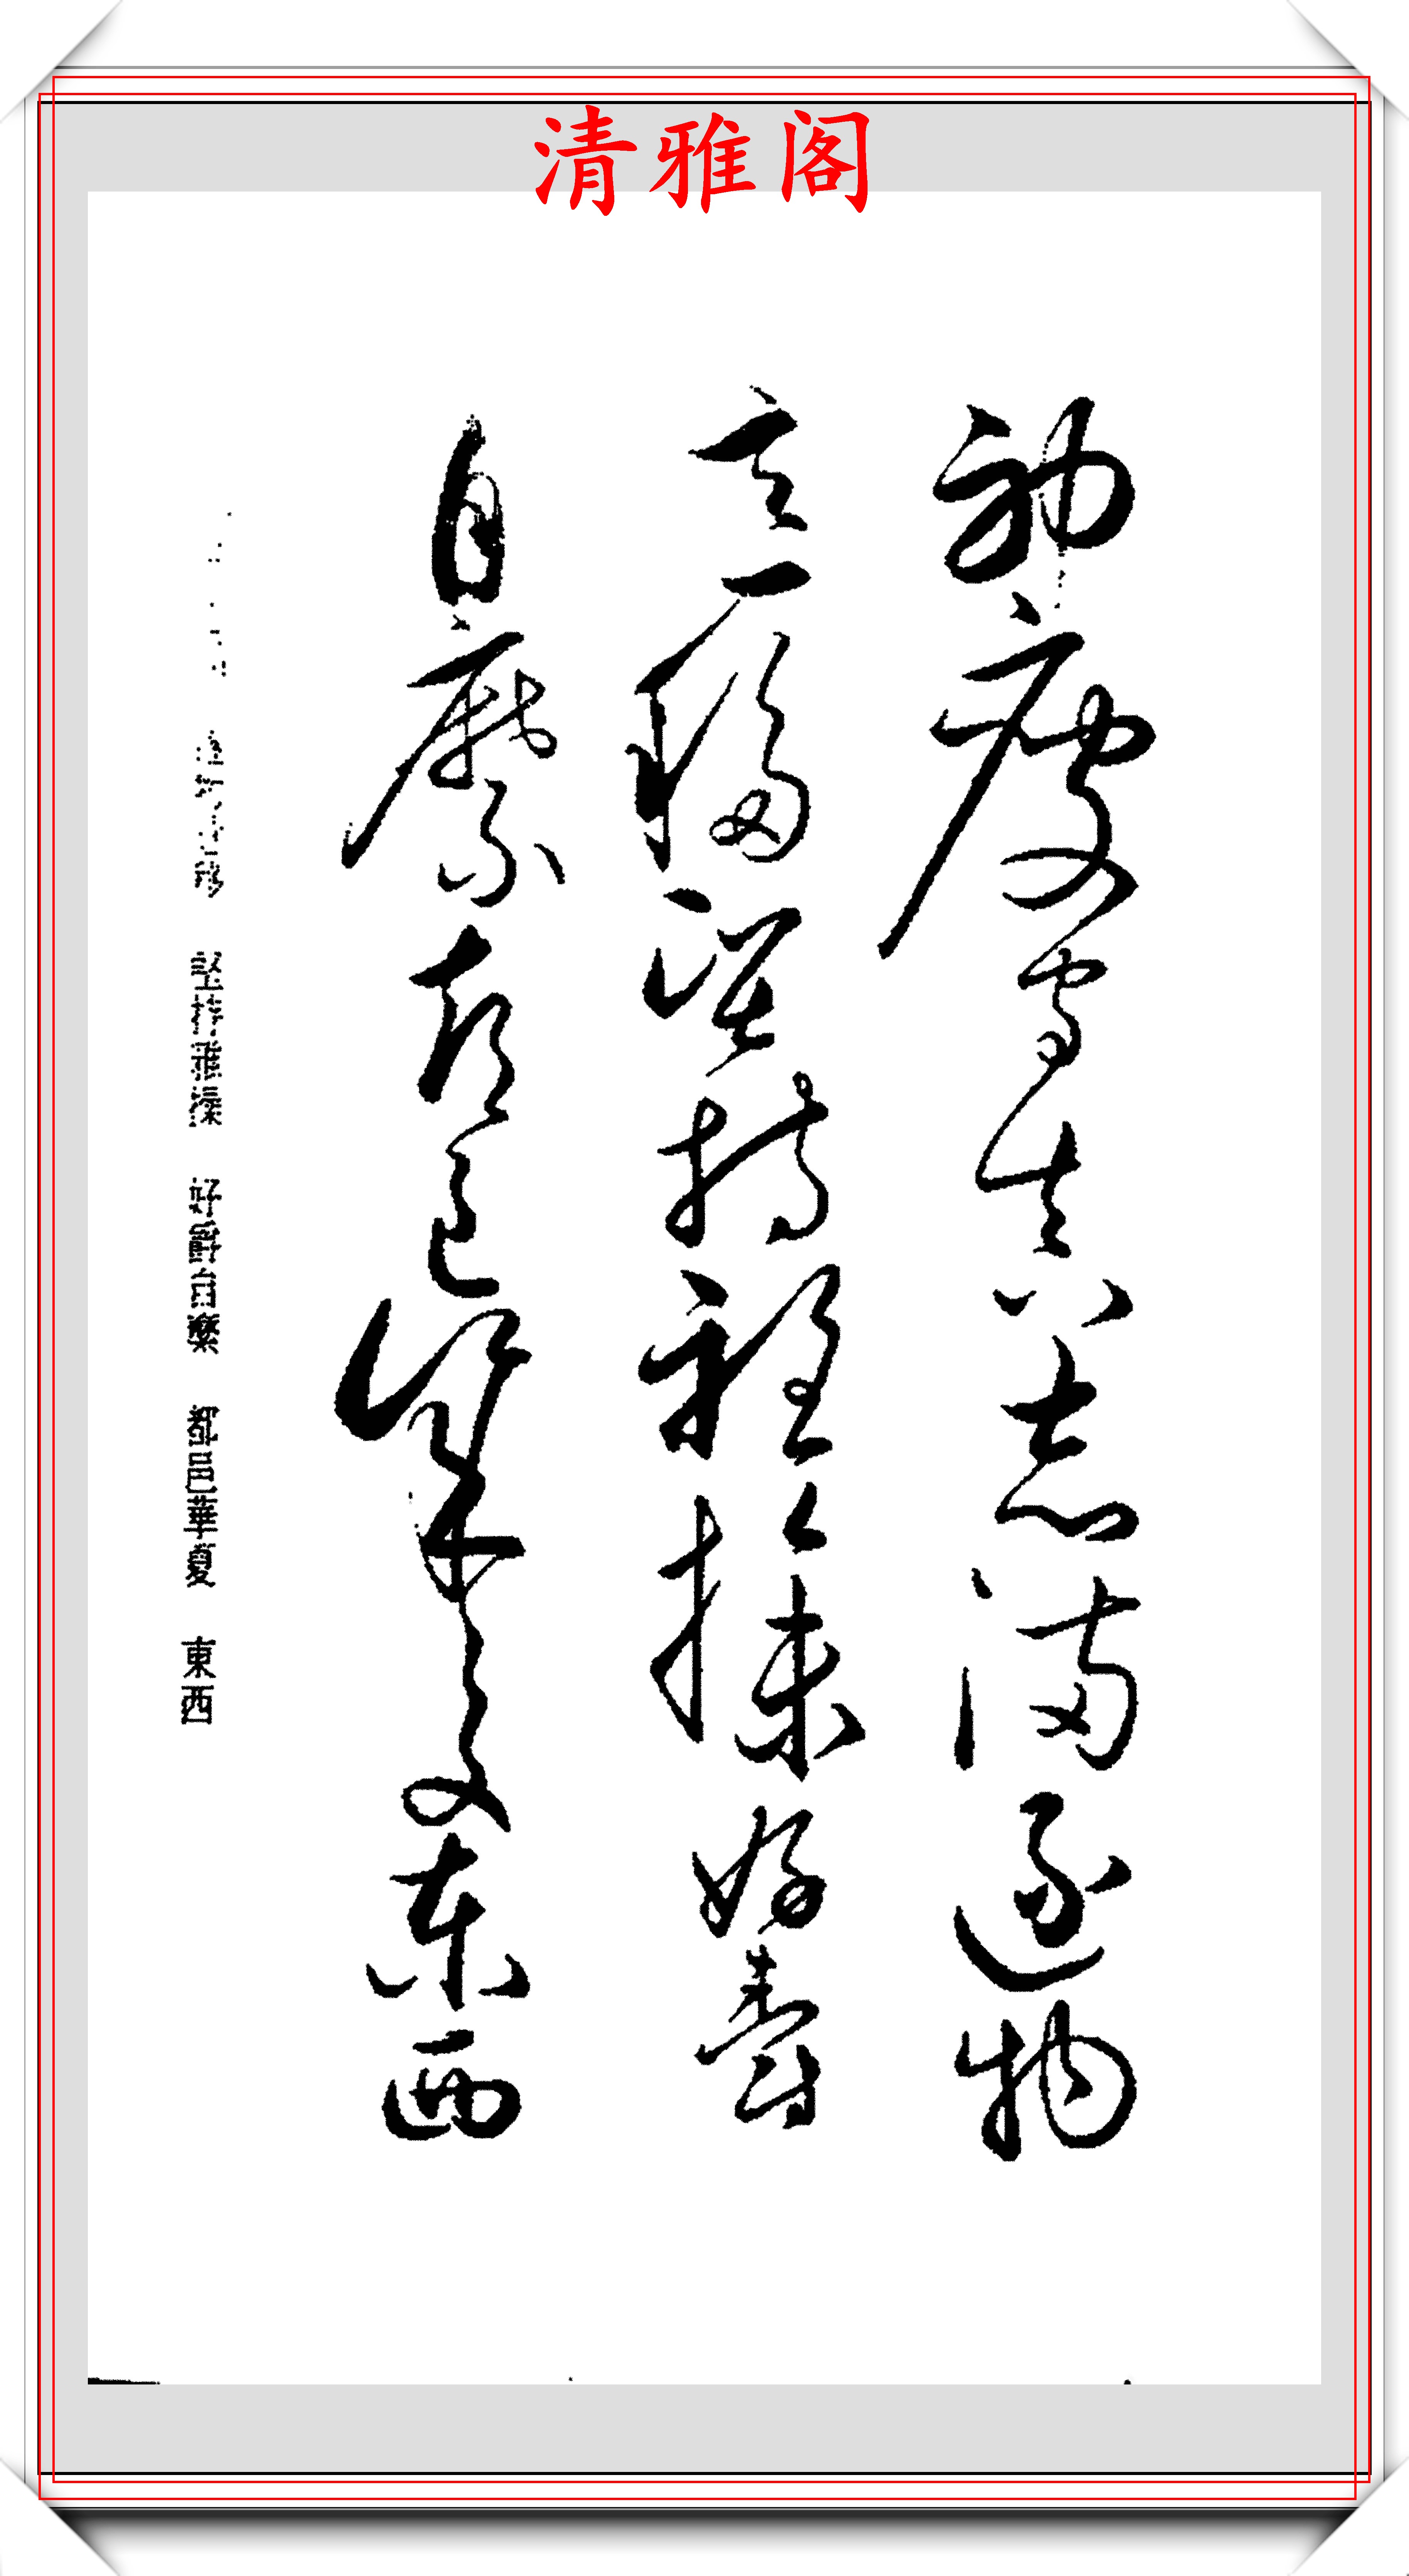 原创唐代书法宗师怀素和尚狂草书法创作千字文笔法瘦劲飞动自然